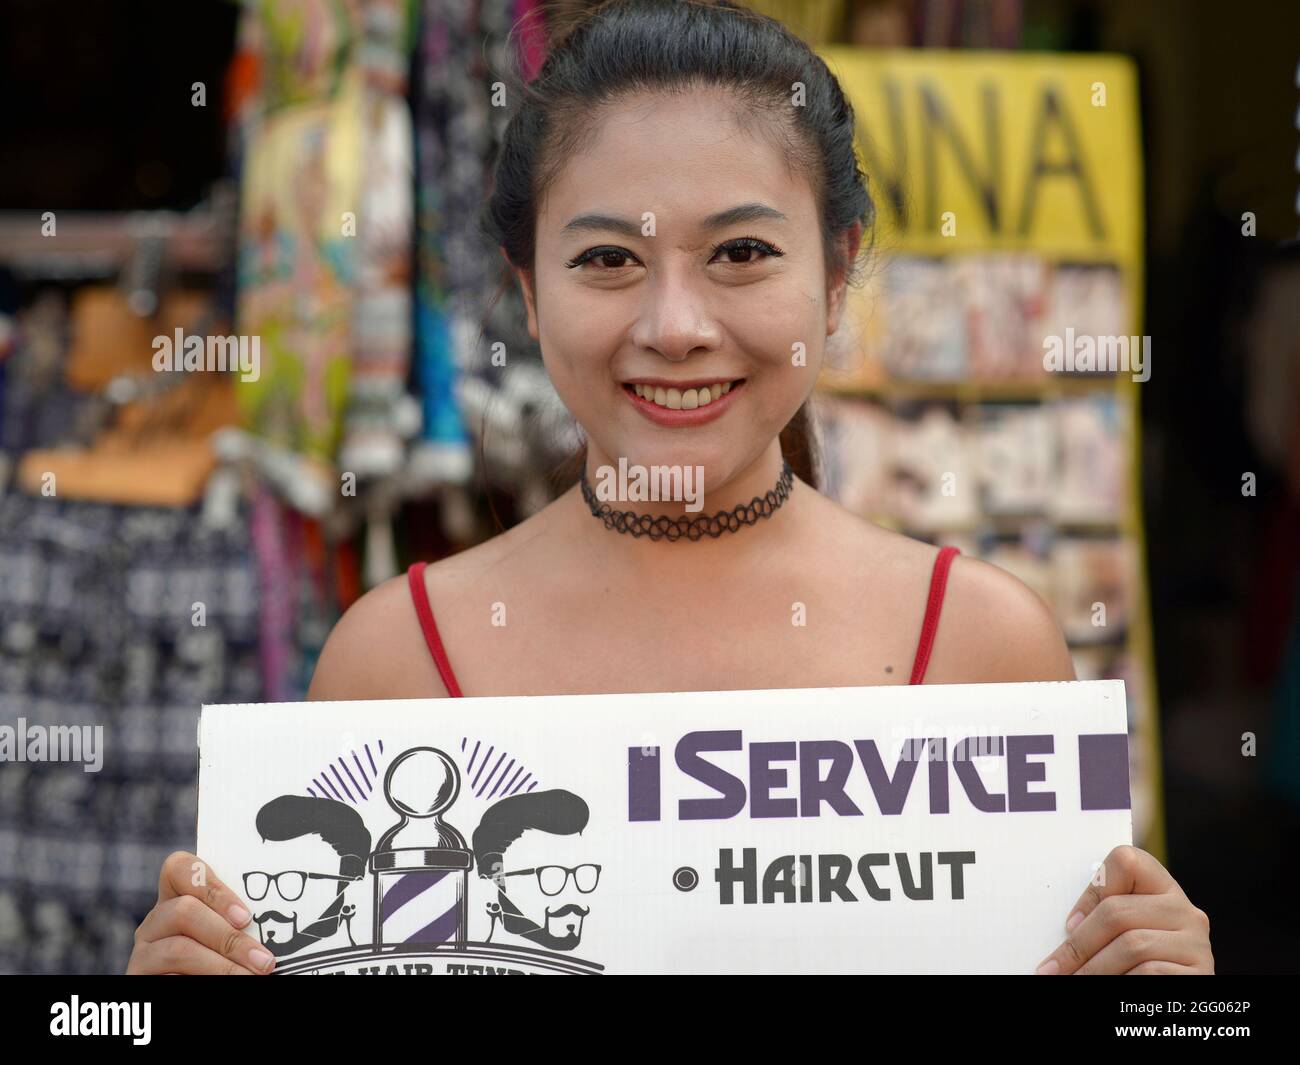 Alegre joven hermosa chica tailandesa estilista anuncia su servicio de corte de pelo en una pizarra de mano y sonríe para el espectador. Foto de stock